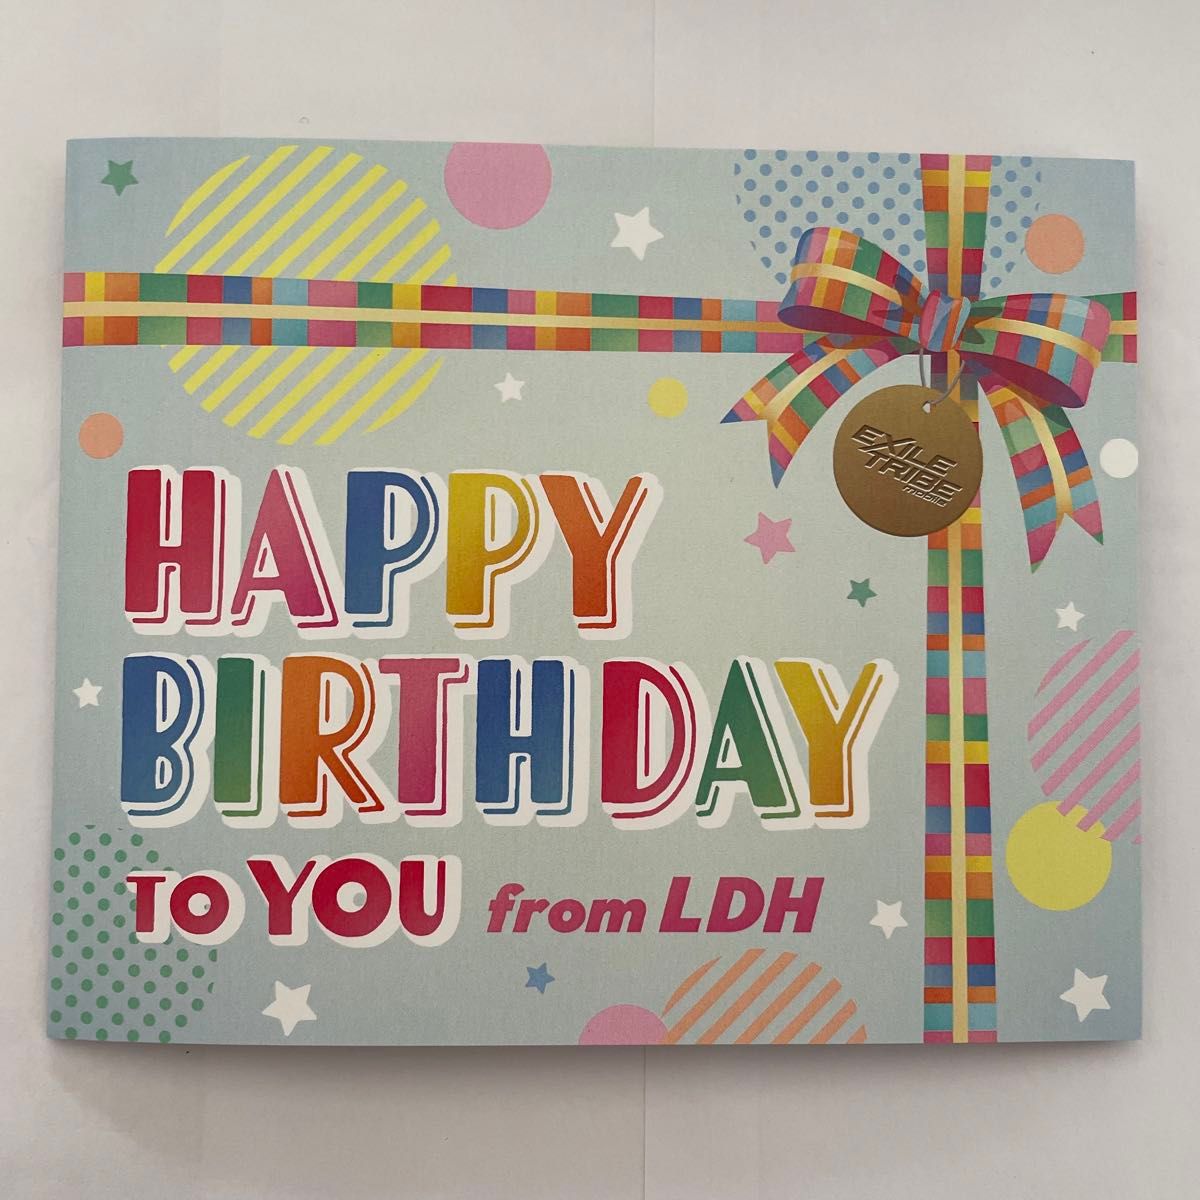 LDH BIRTHDAY CARD